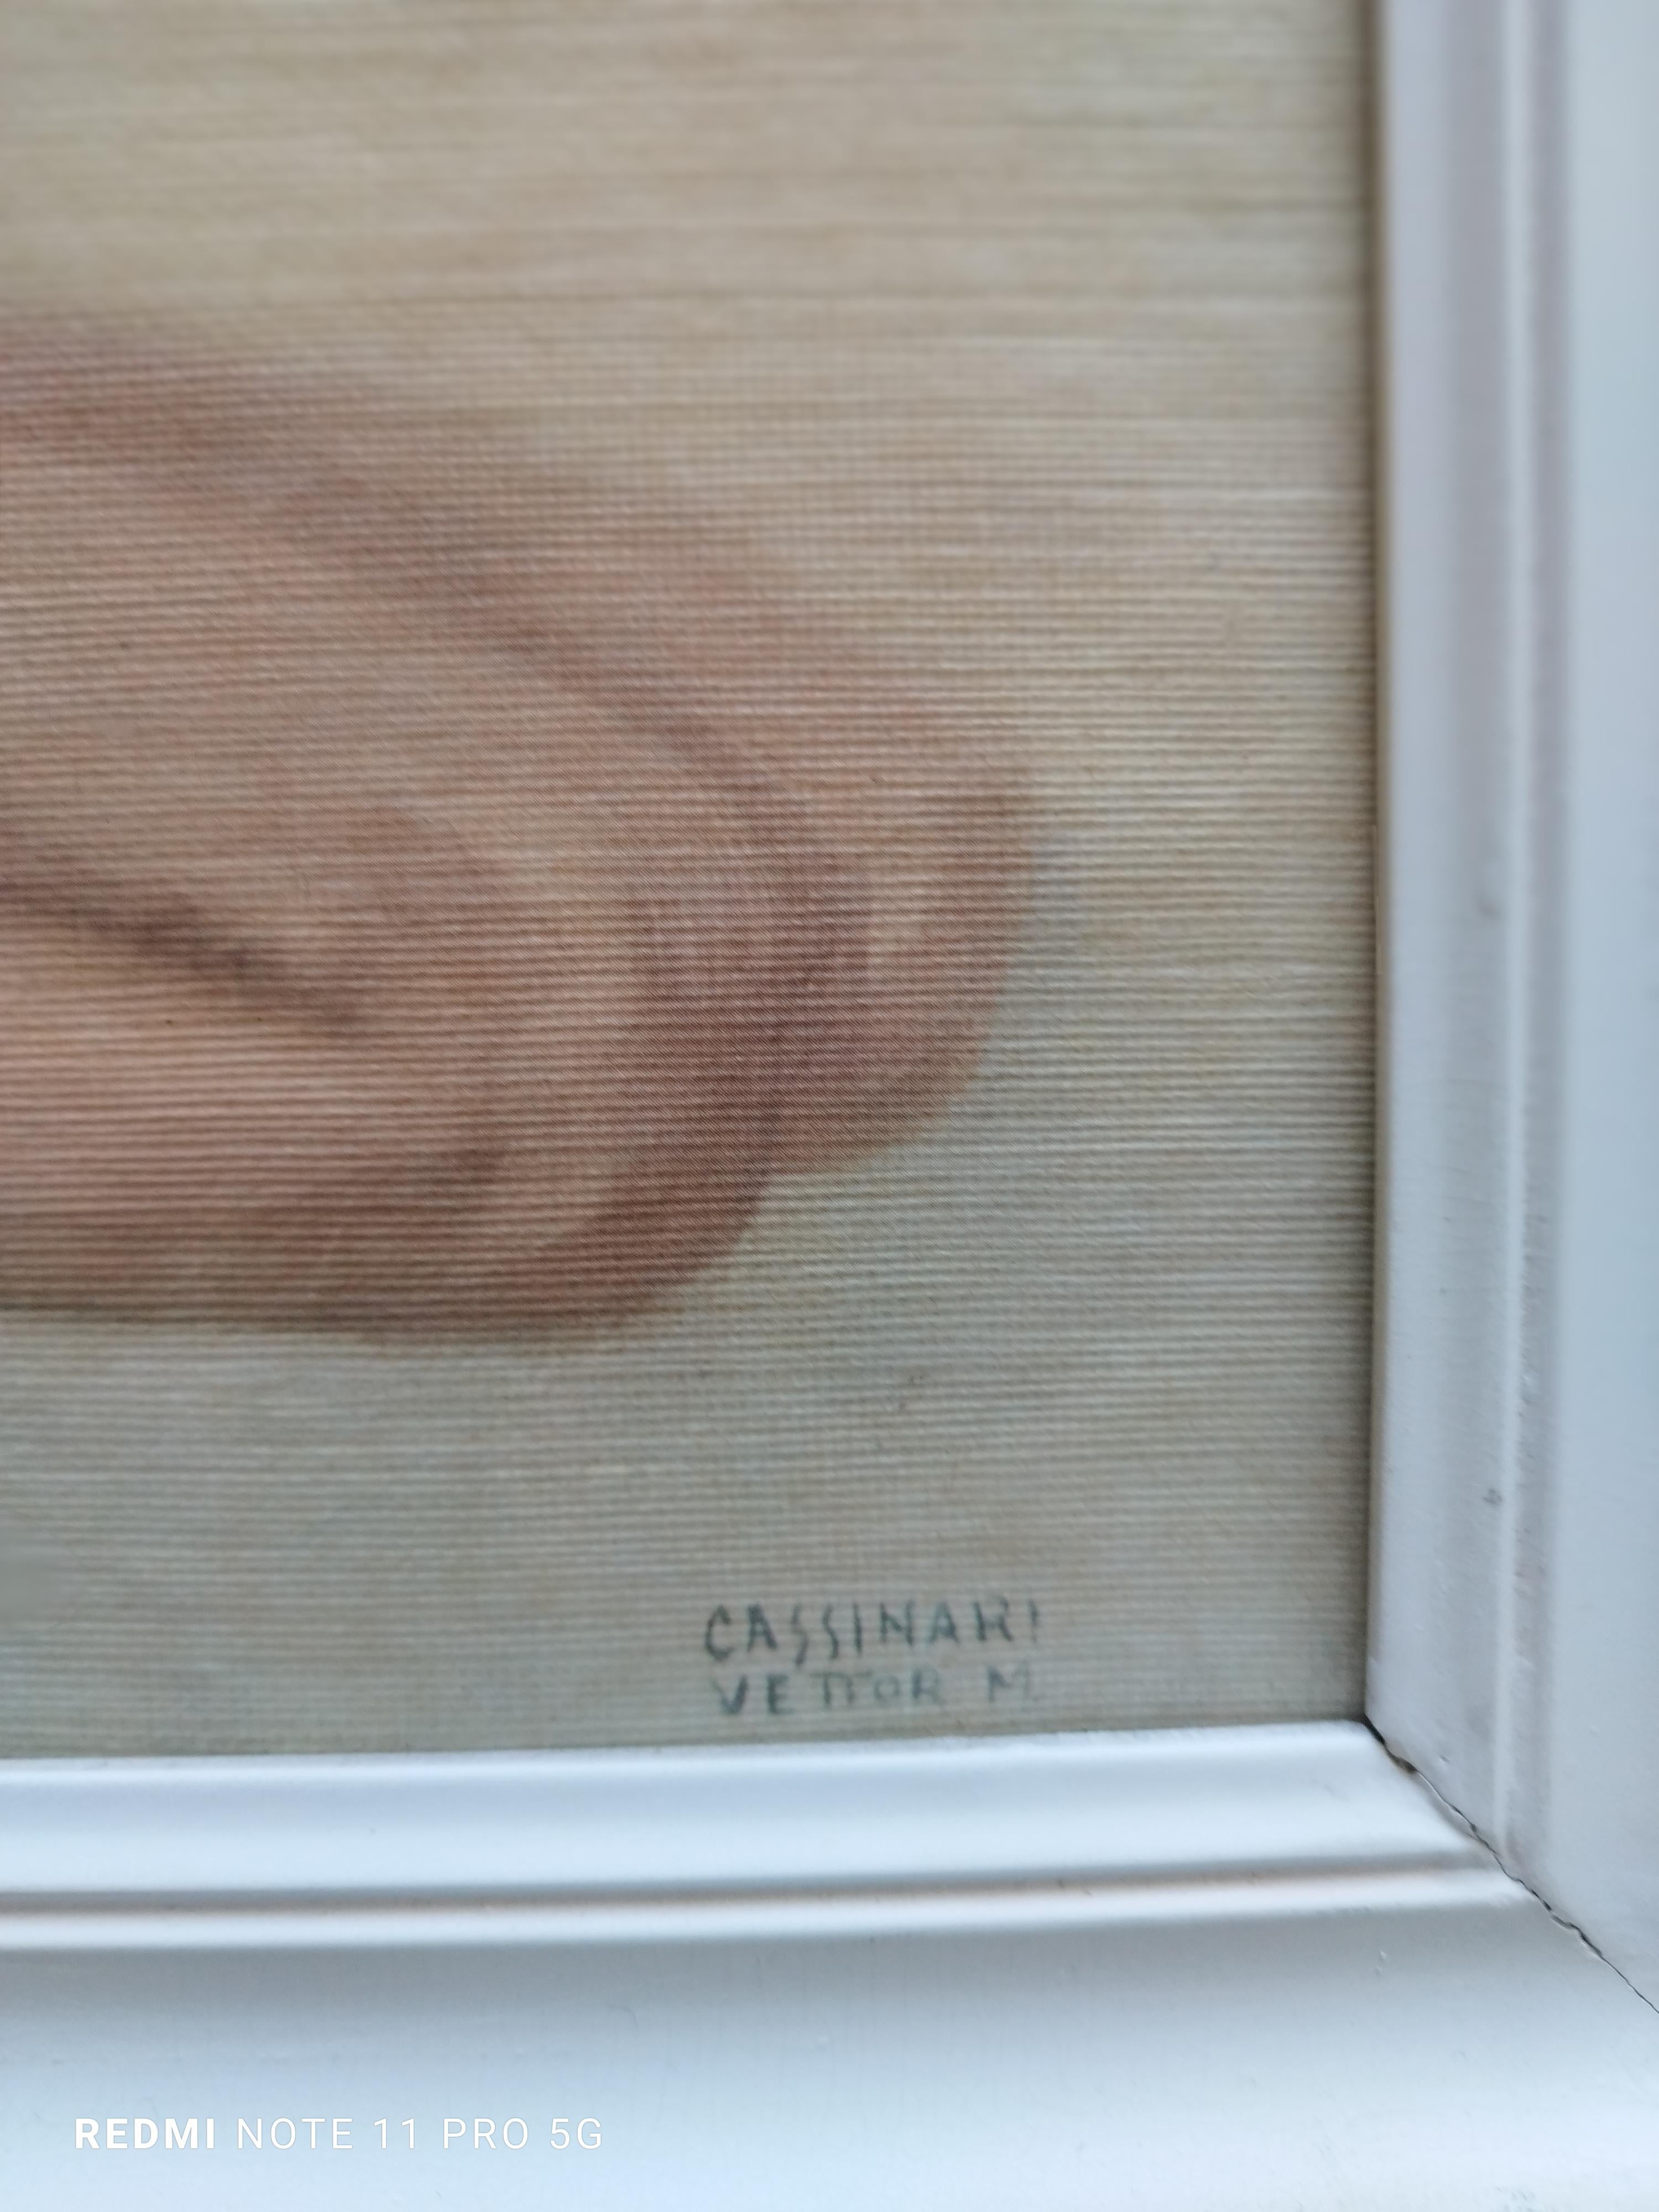 WOMAN'S NUDE - Impression giclée sur toile - Print de Marcello Cassinari Vettor